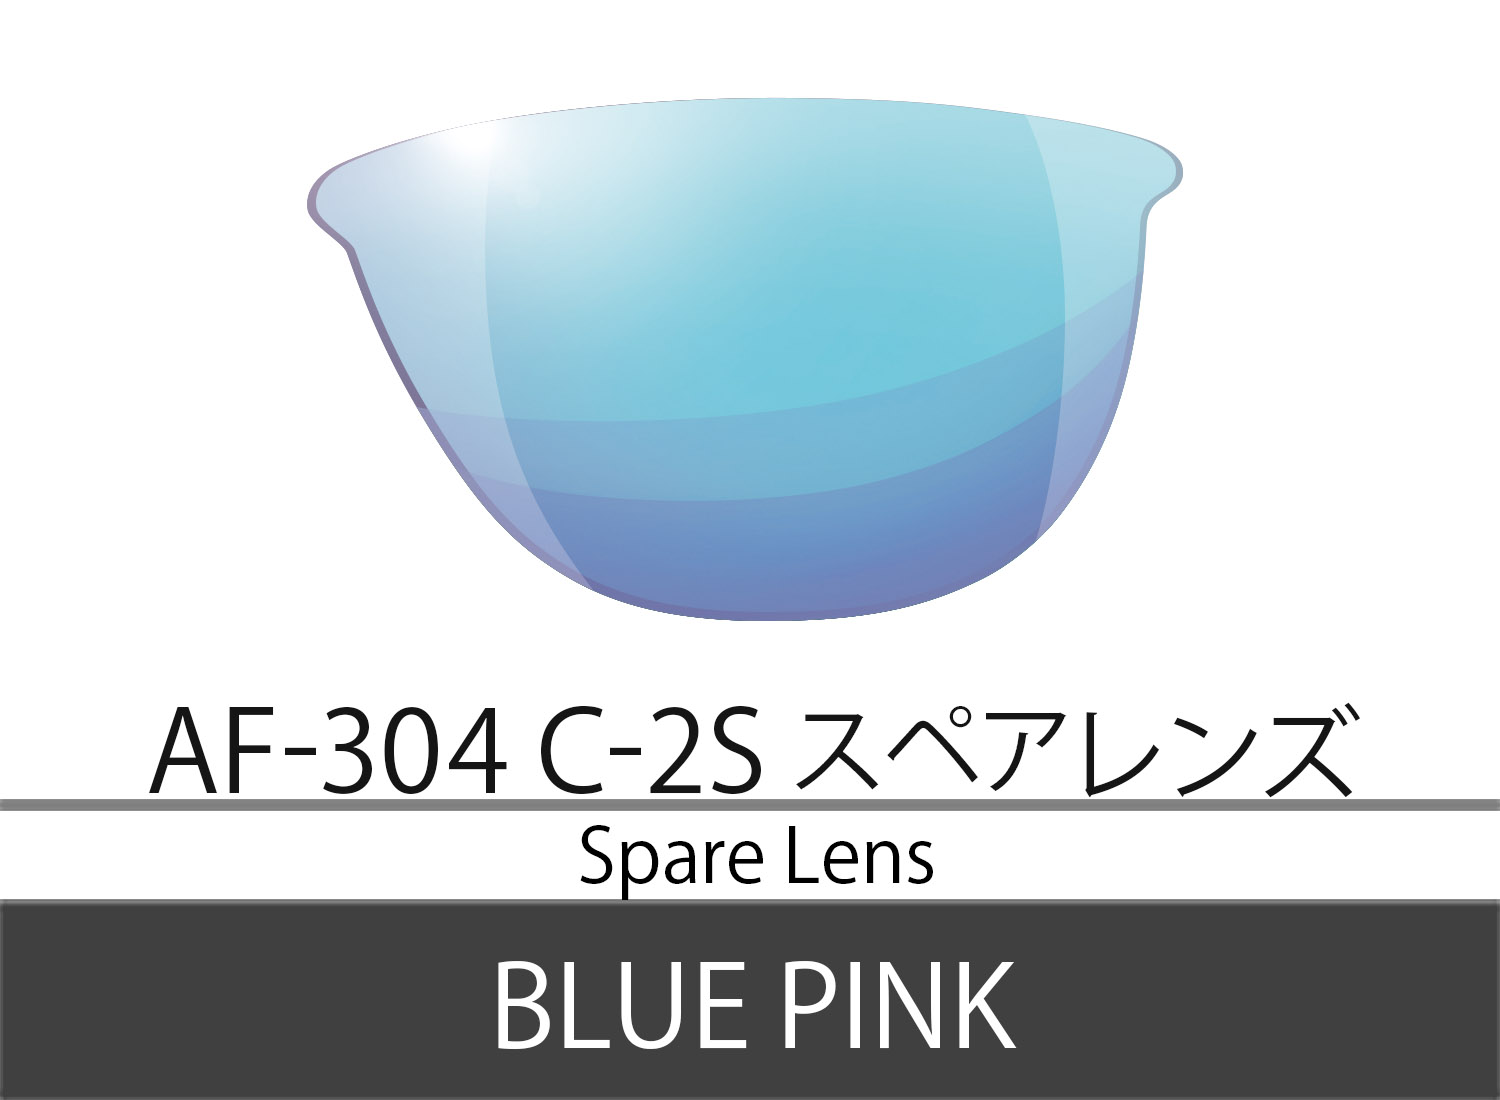 スペアレンズ  エアフライ AF-304 スポーツサングラス  鼻パッドのない AirFly  紫外線カット UV対策  選び方 